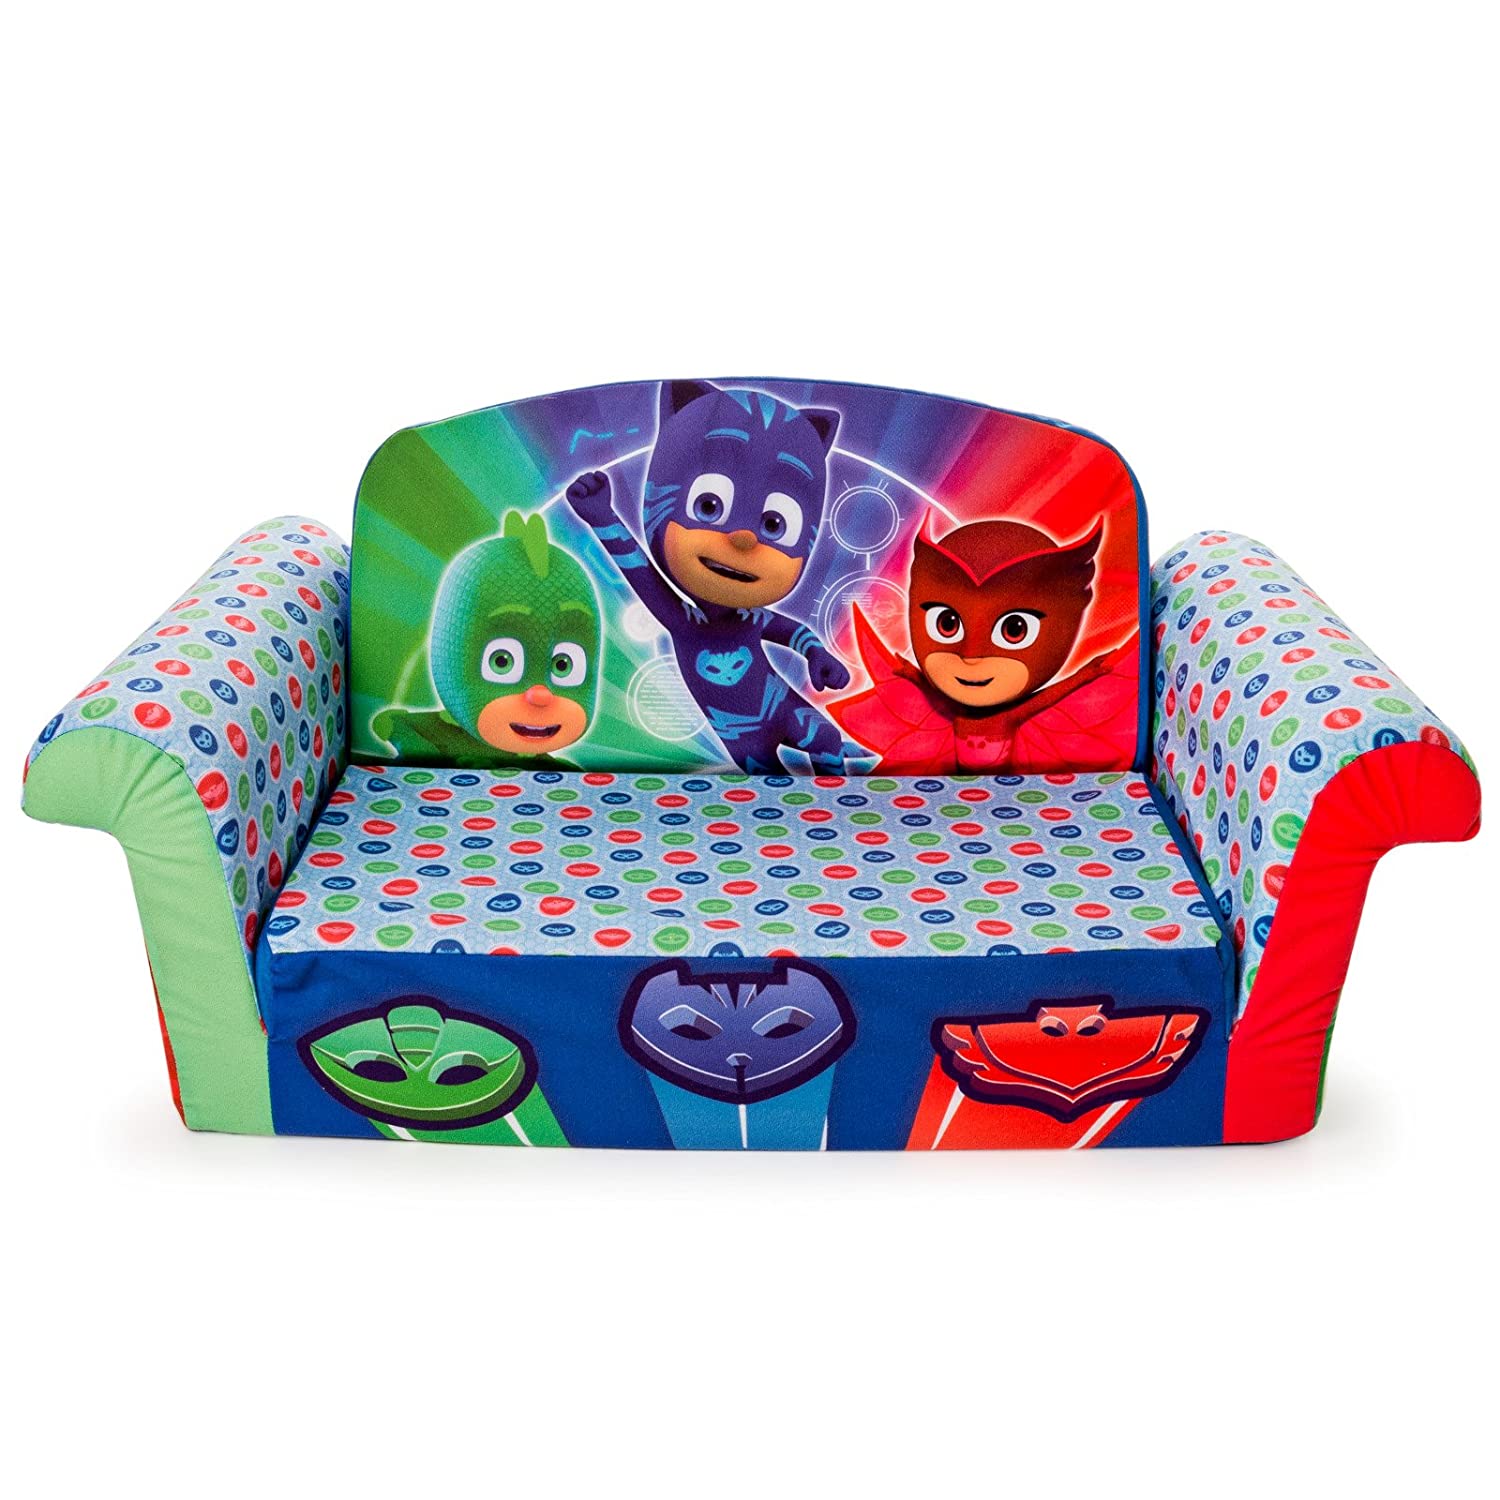 Marshmallow Furniture - Children's 2 in 1 Flip Open Foam Sofa, PJ Masks Flip Open Sofa